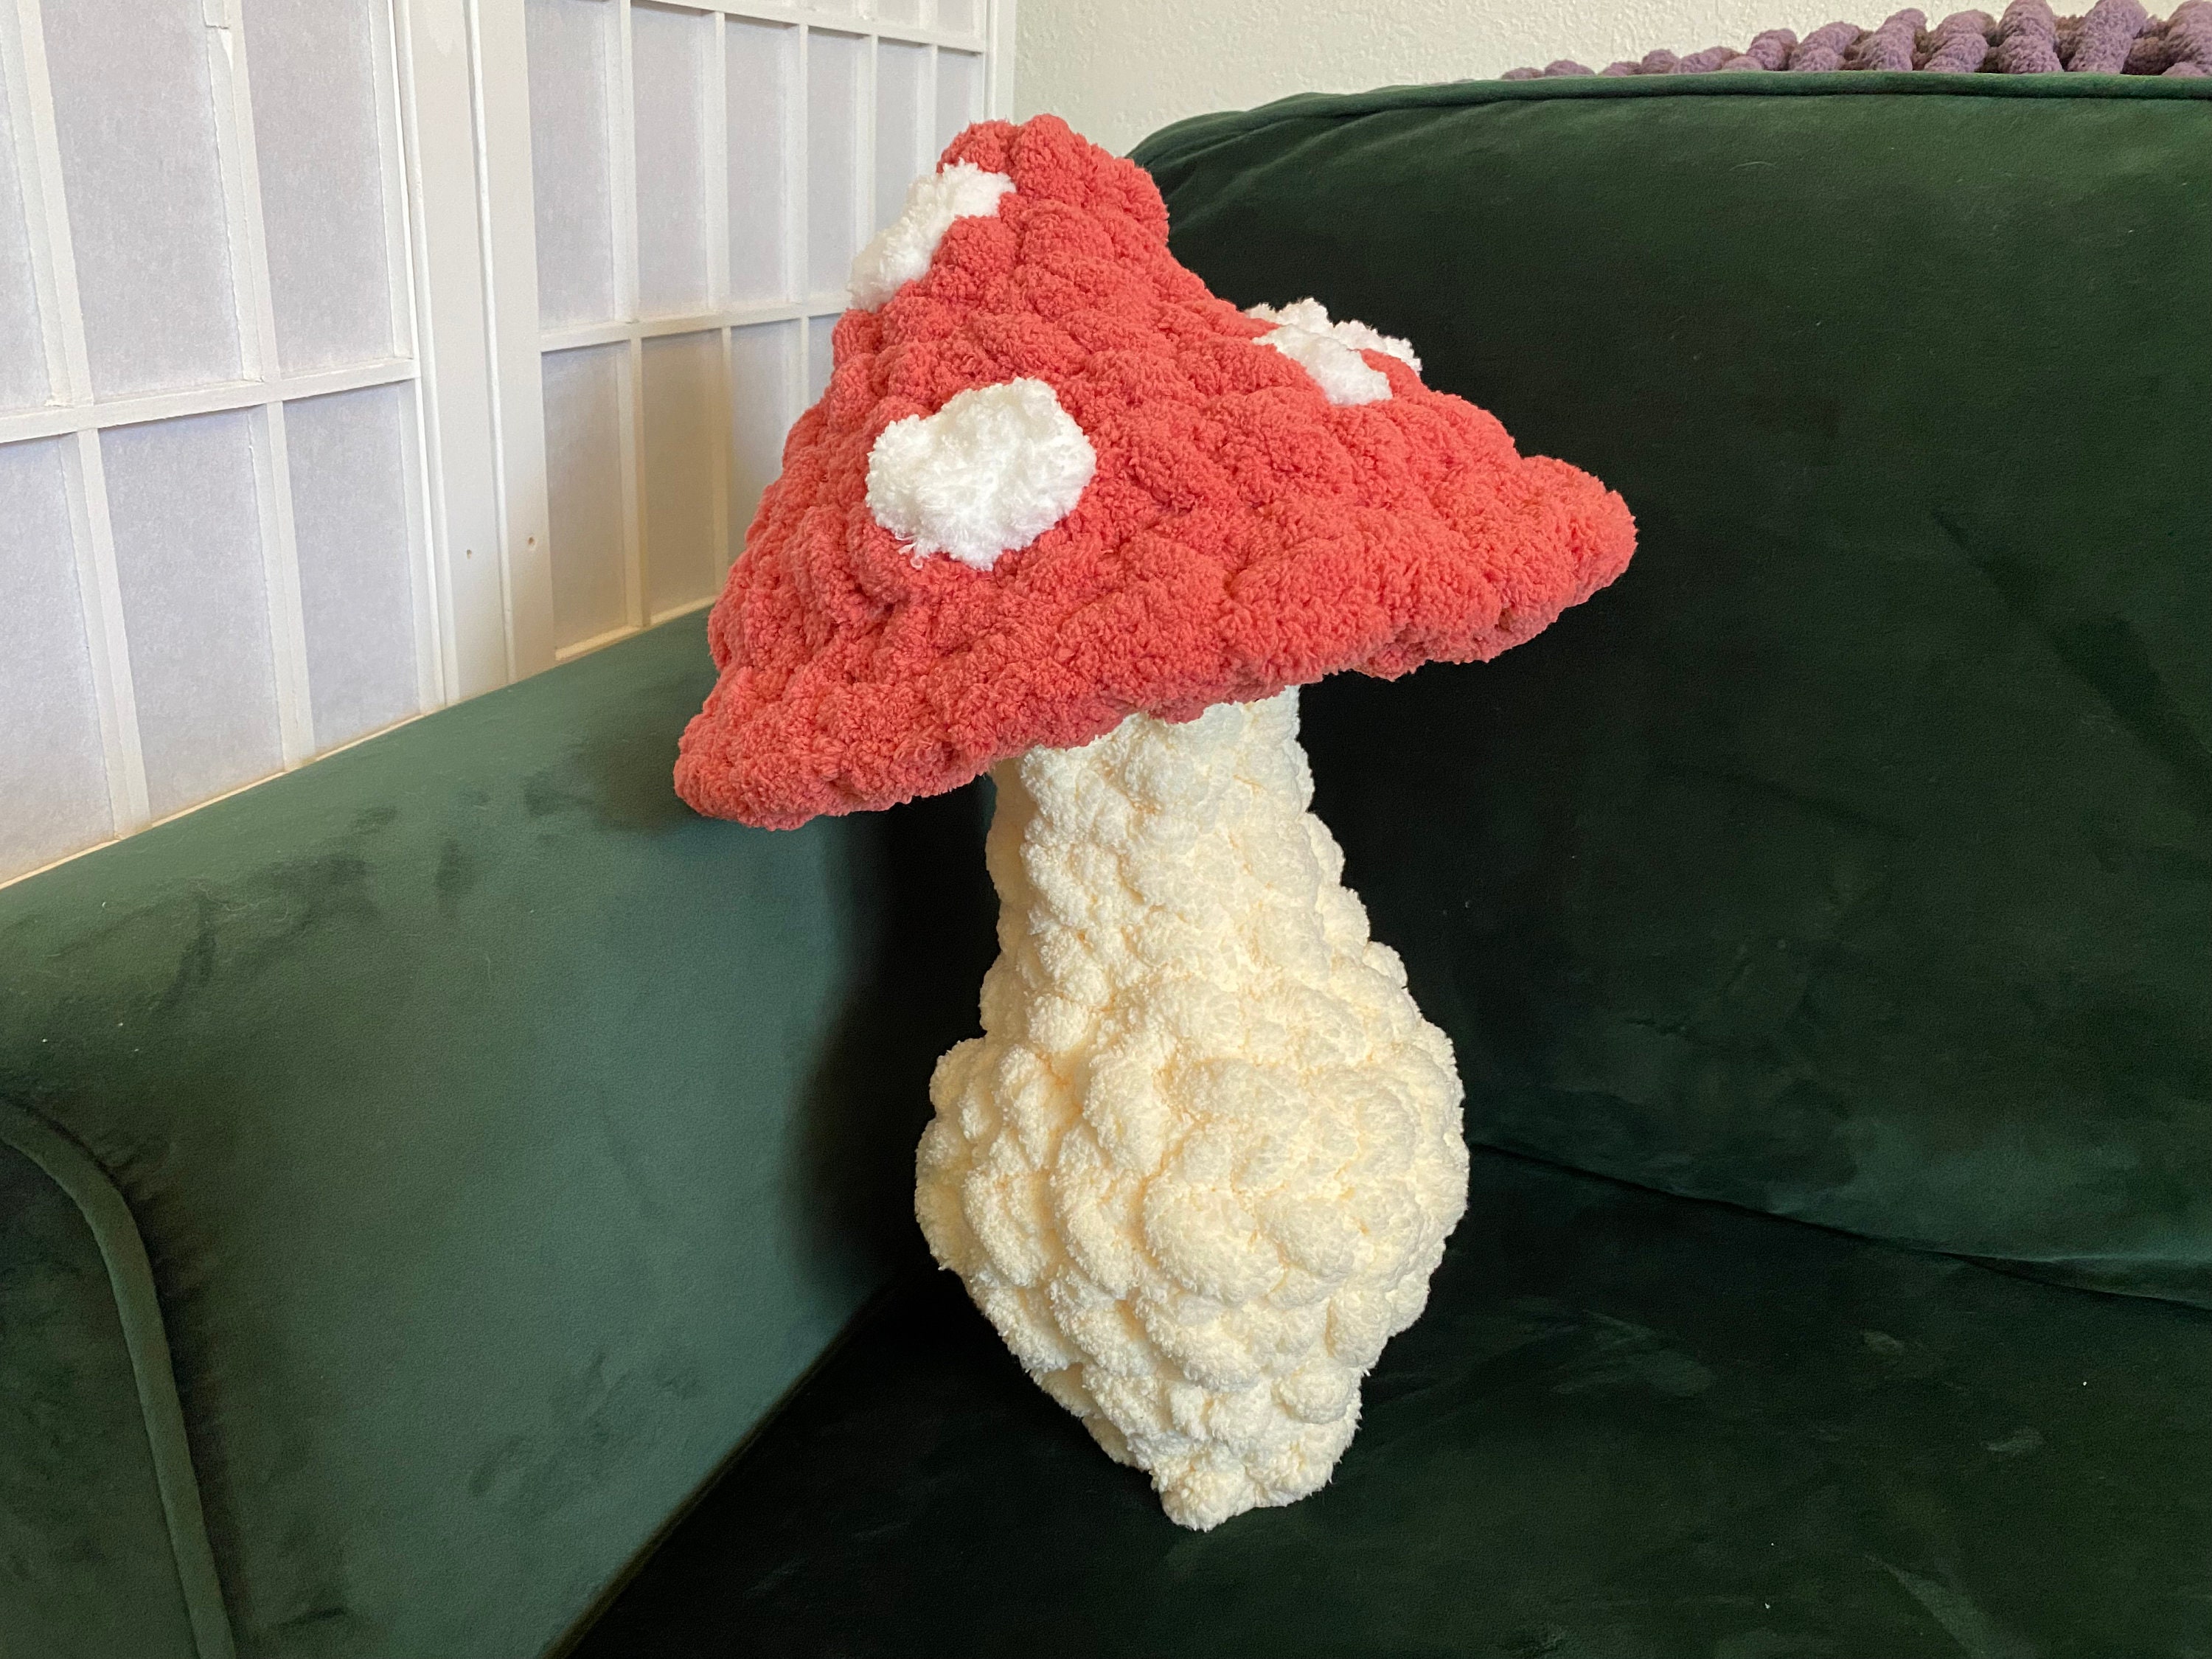 MINI Emotional Support Mushroom Boy, Crochet Cute Snuggly Mushroom Boy